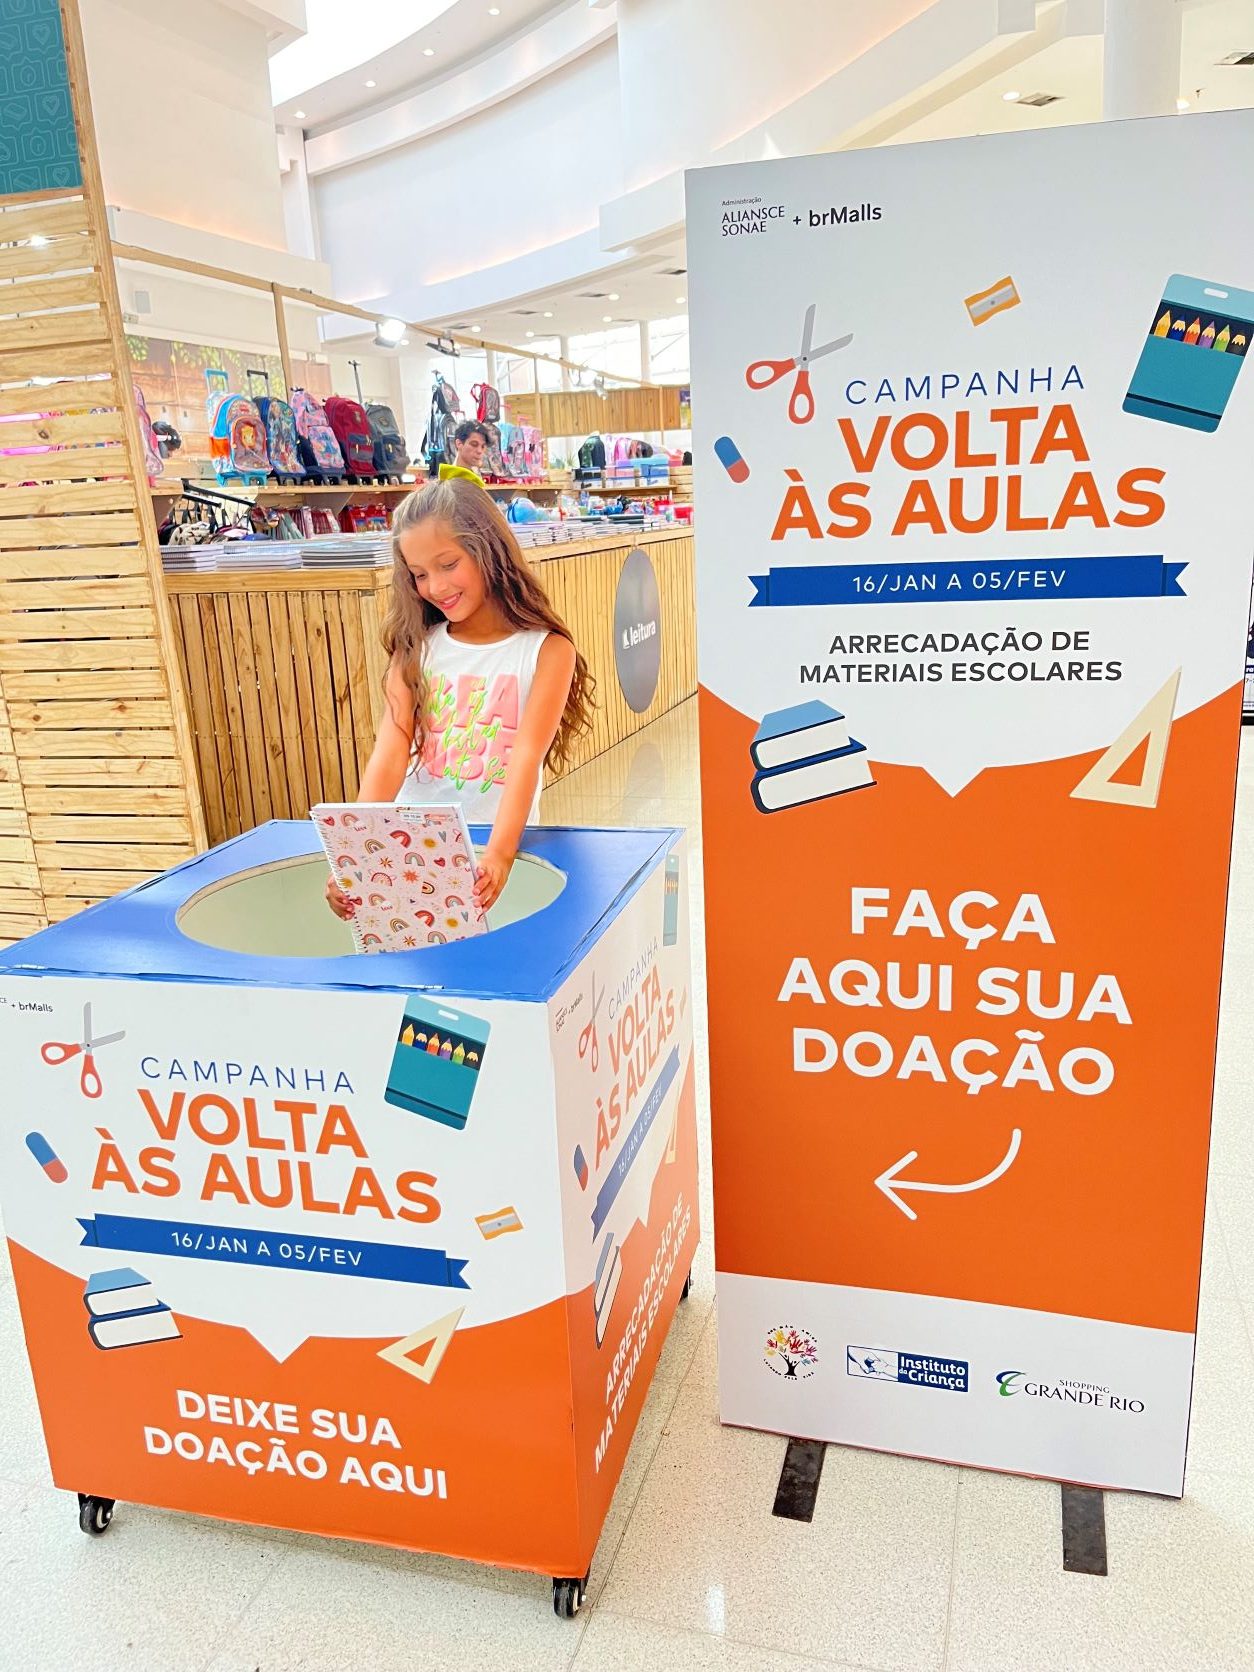 Shoppings na Baixada Fluminense arrecadam doações de materiais escolares